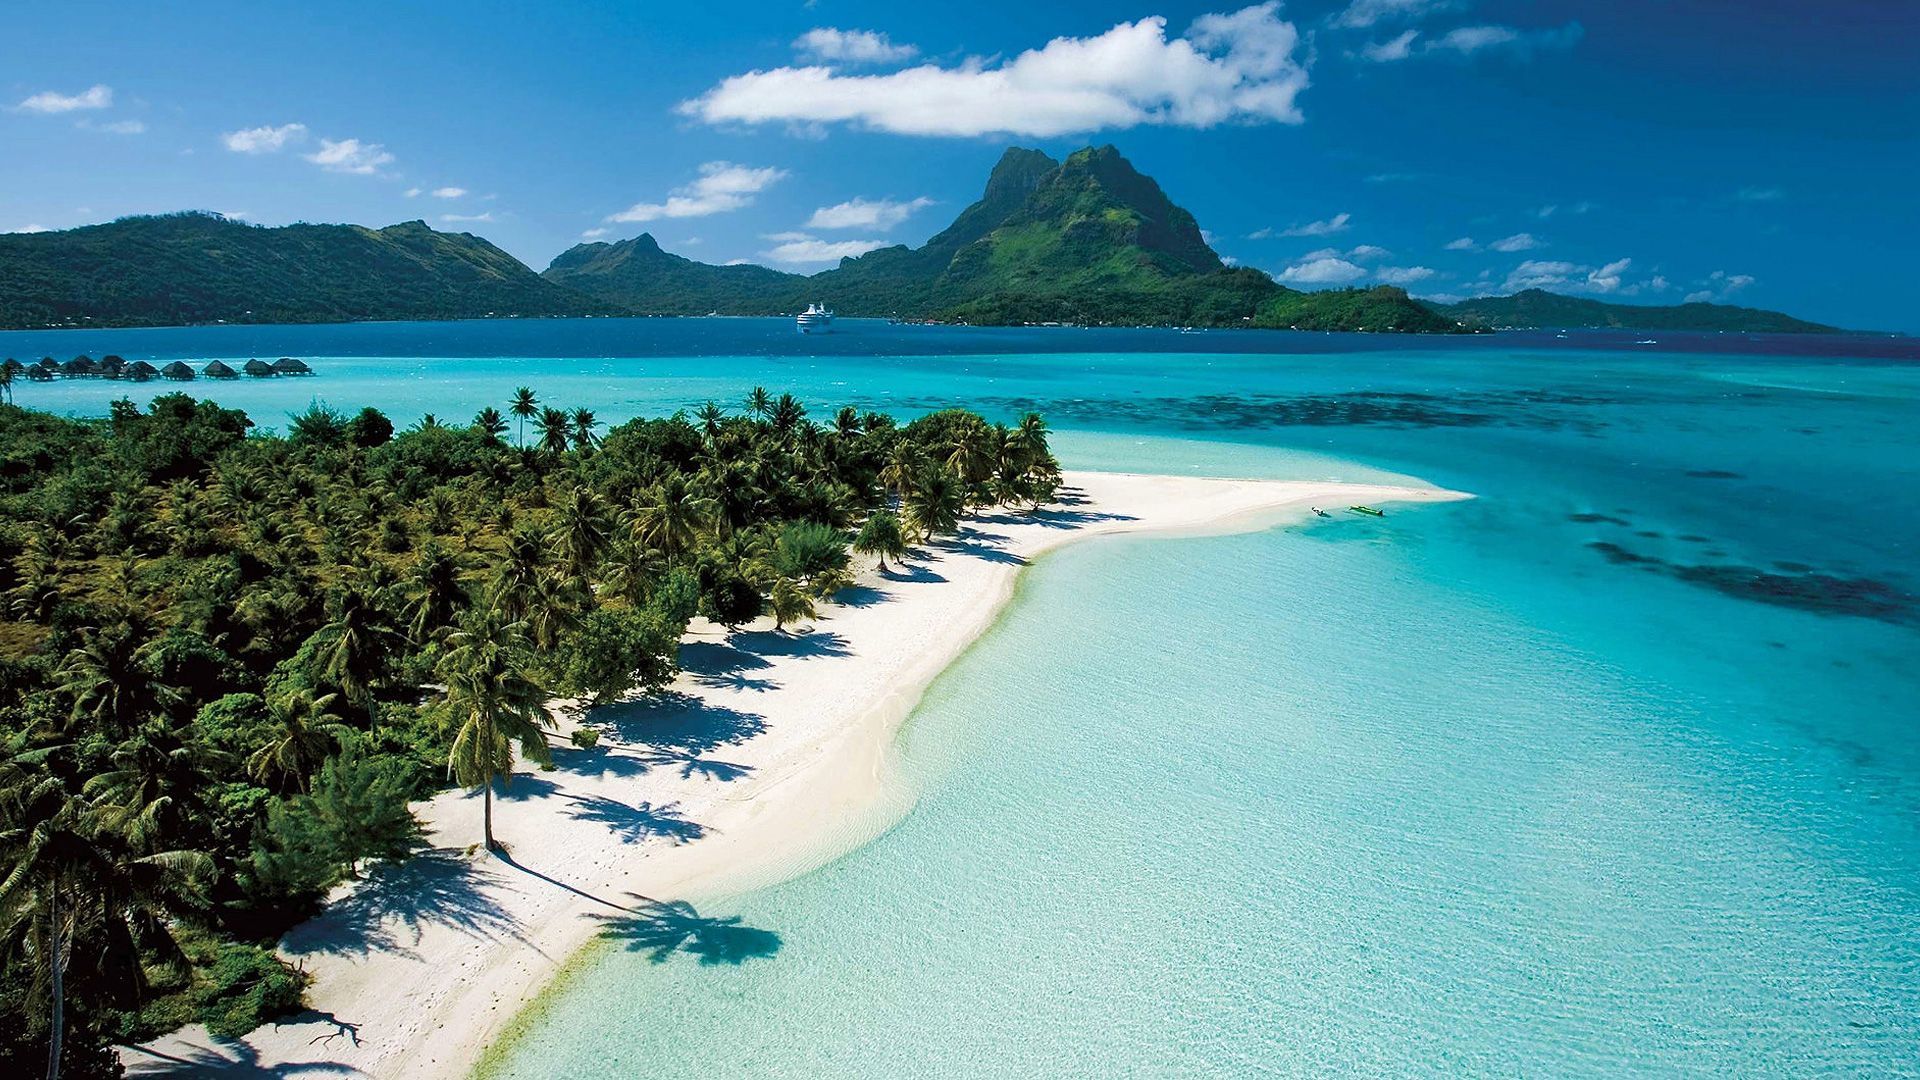 Tahiti wallpaper. Beaches in the world, Beautiful beaches, Tahiti